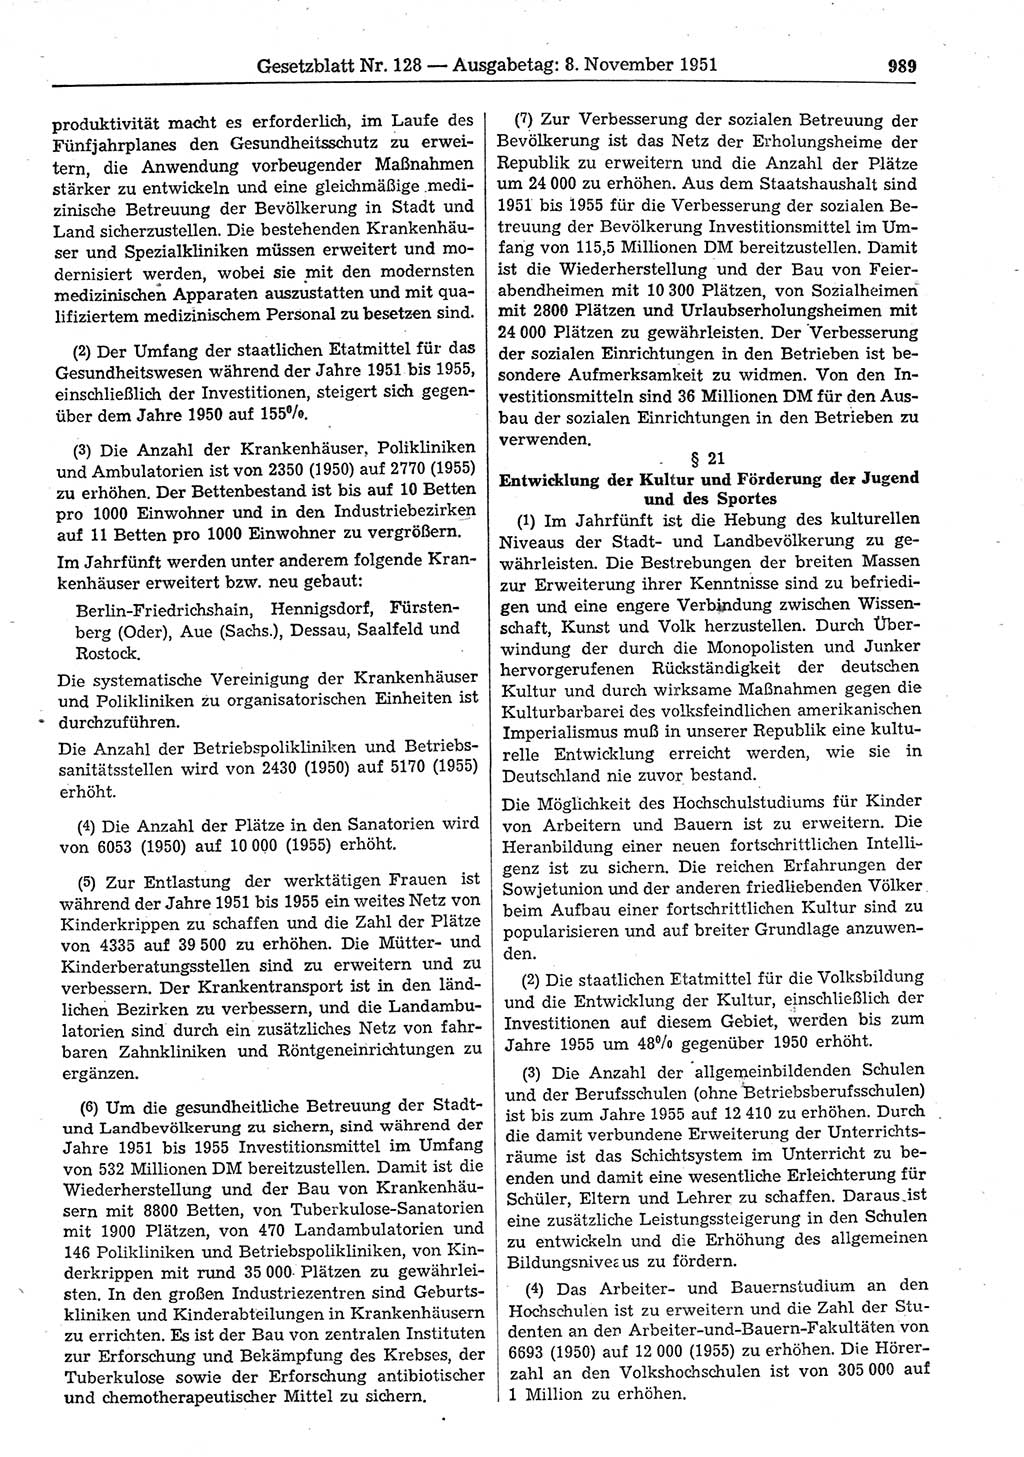 Gesetzblatt (GBl.) der Deutschen Demokratischen Republik (DDR) 1951, Seite 989 (GBl. DDR 1951, S. 989)